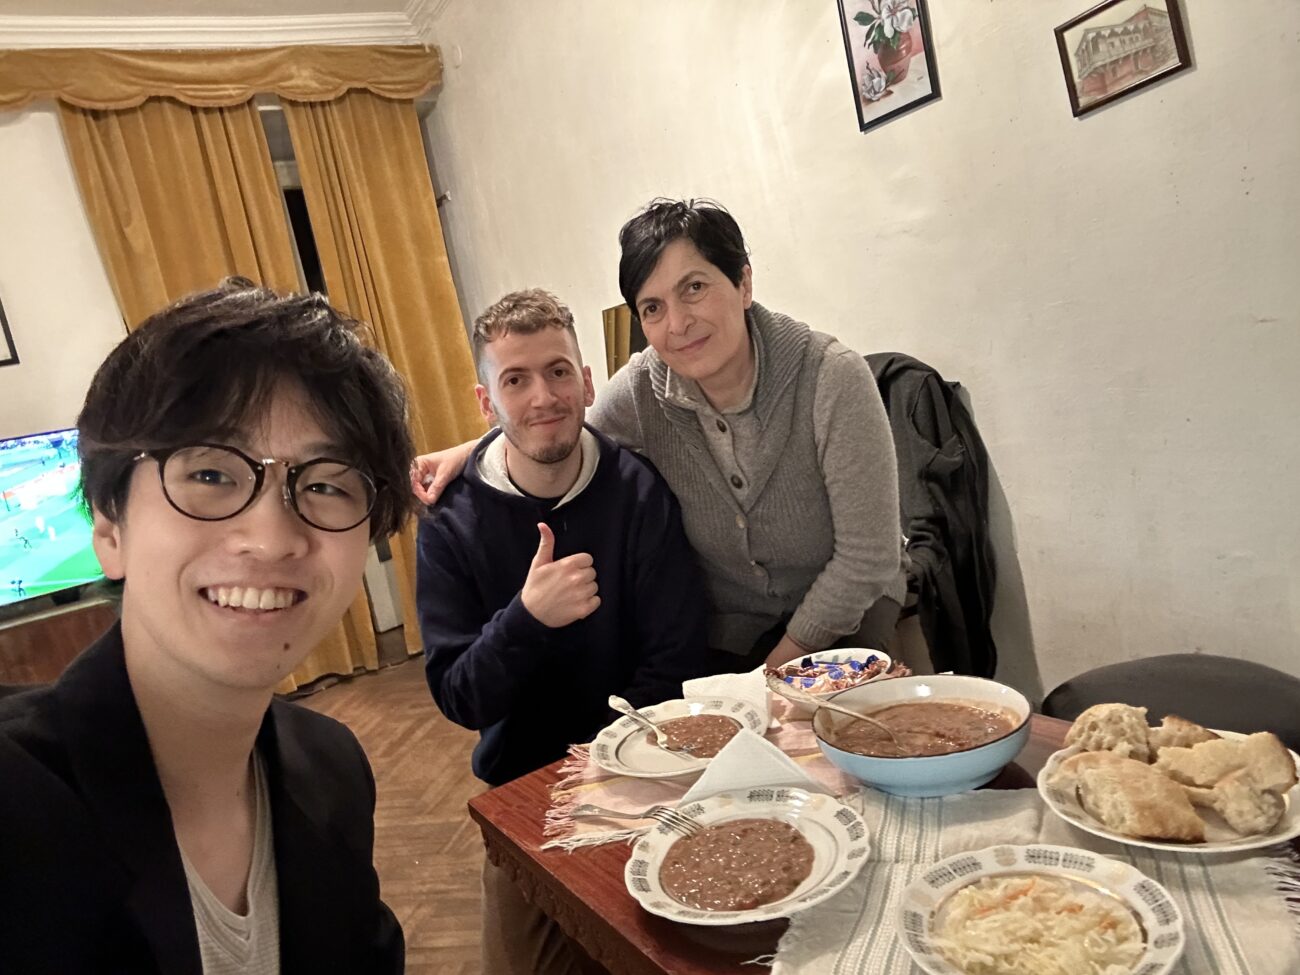 Наконец-то мы встретились с Дэвидом лично! Приглашают в дом и едят там грузинскую еду.